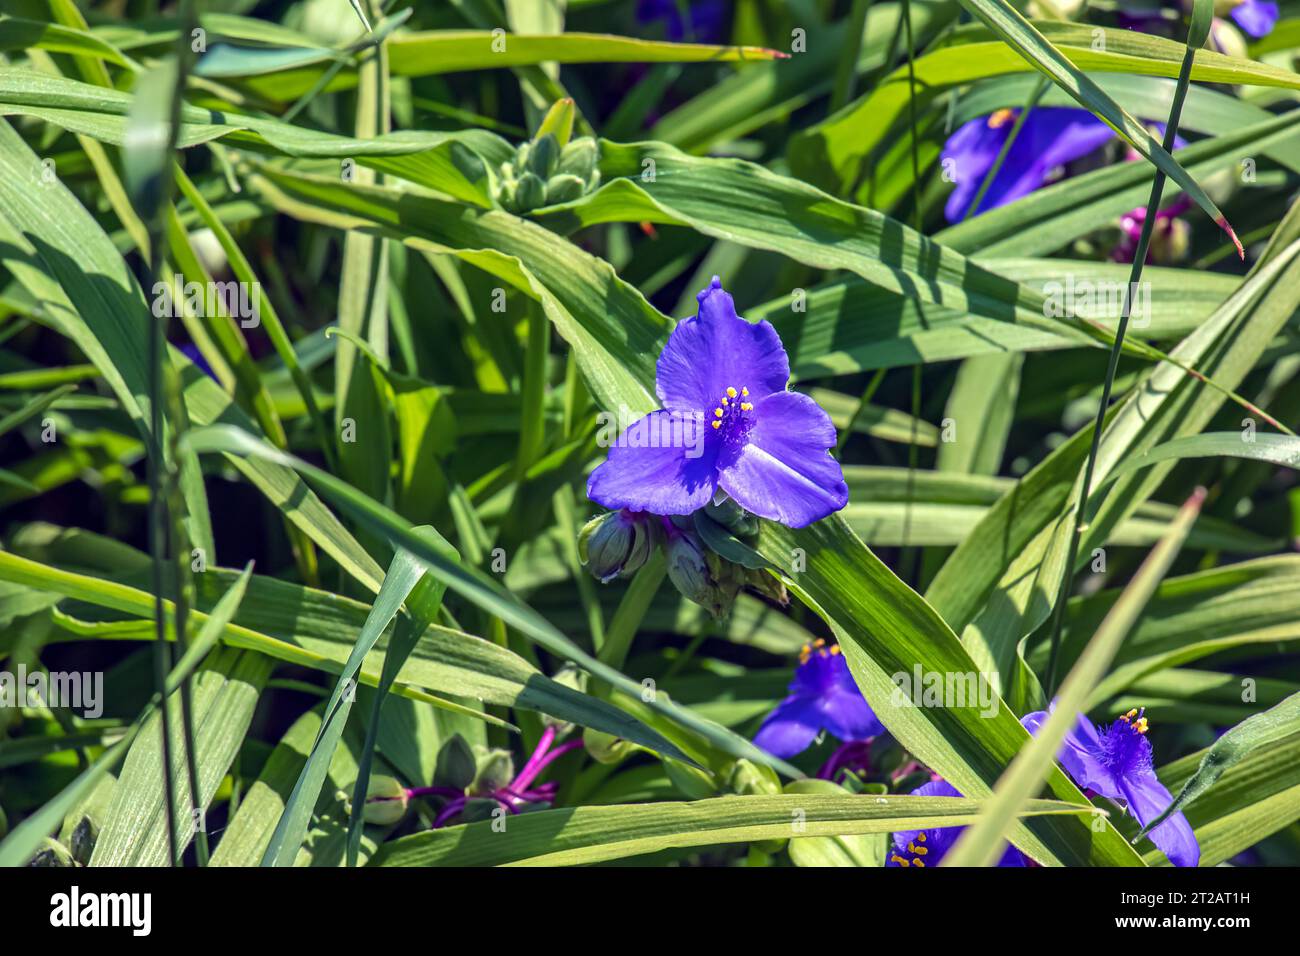 Purpurne dreiblättrige Blüten des Spinnennetzes Tradescantia virginiana L. Staudenpflanze. Die tradescantia-Blume blüht auf einem Hintergrund Stockfoto